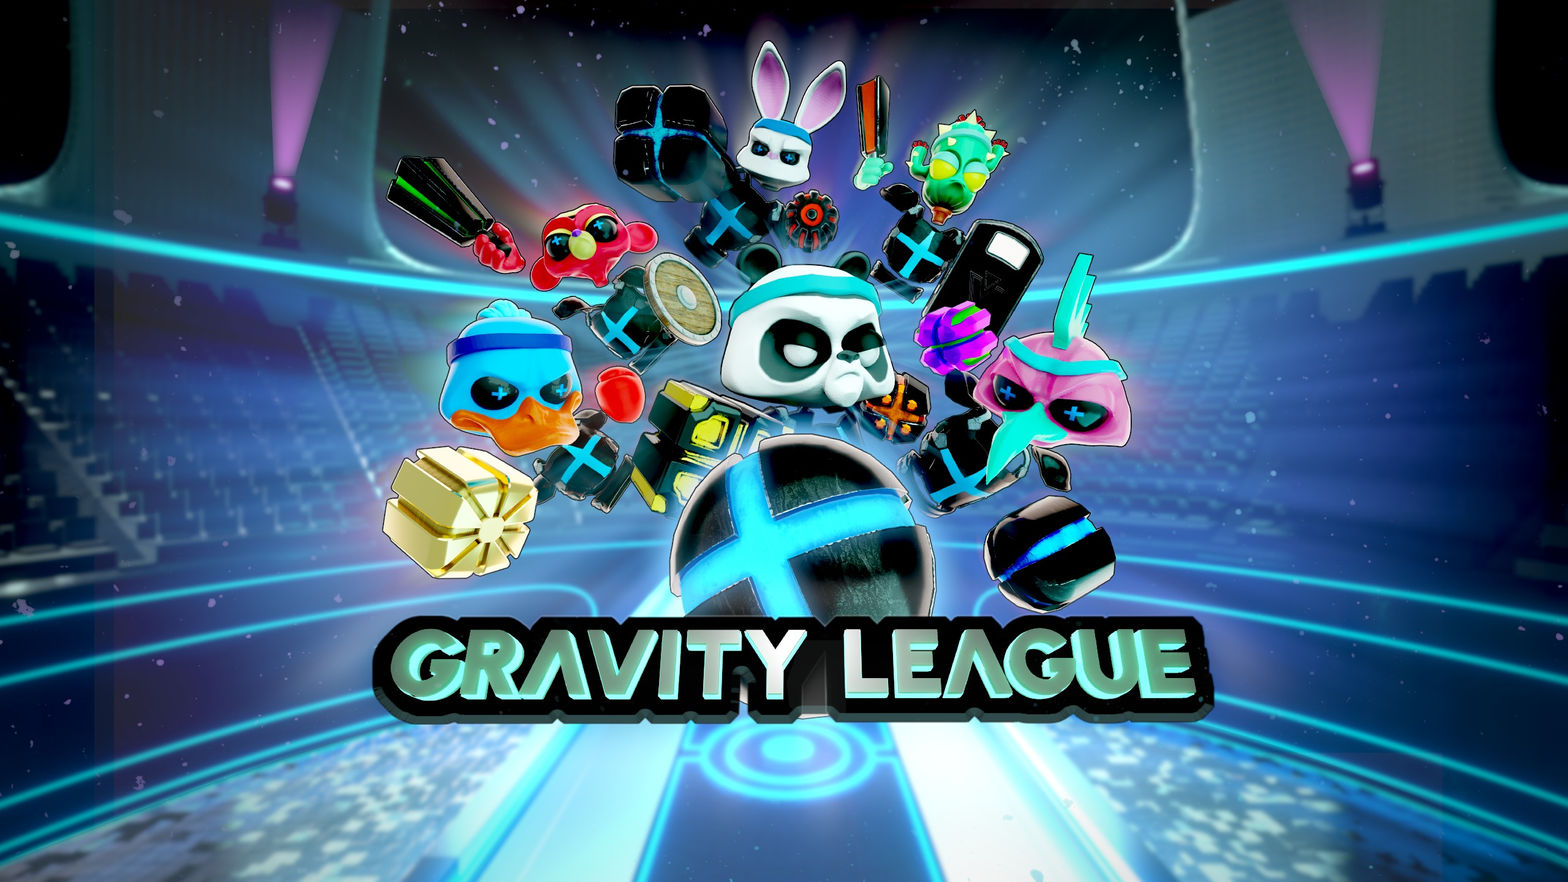 Gravity League